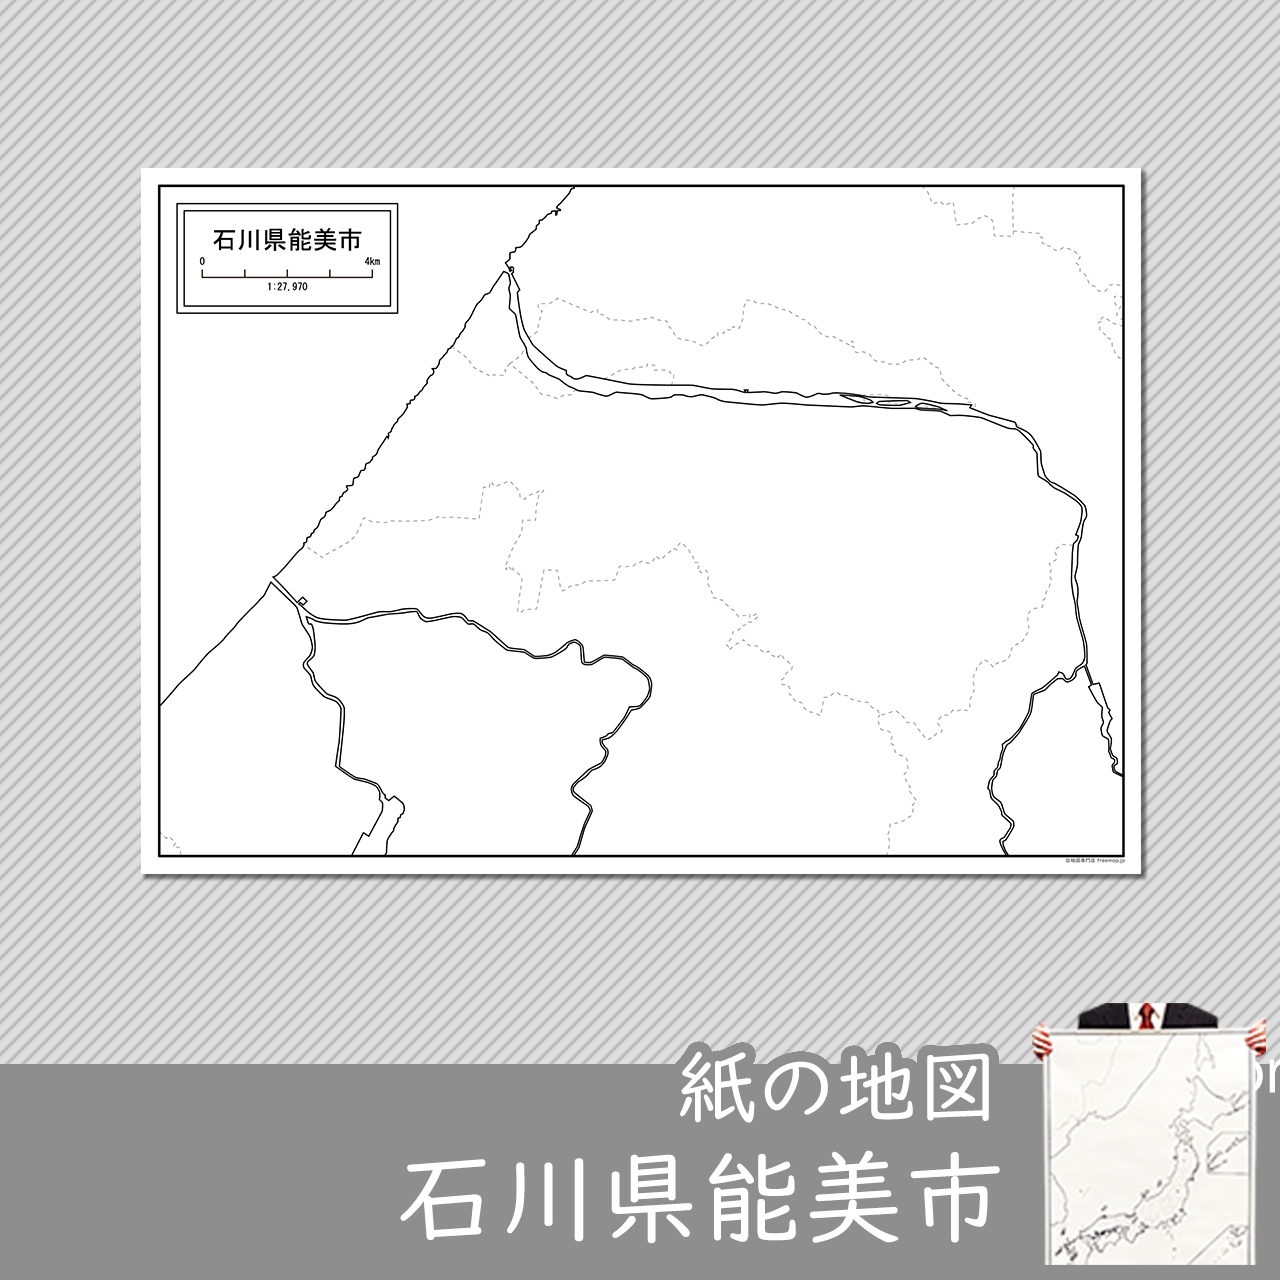 能美市の紙の白地図